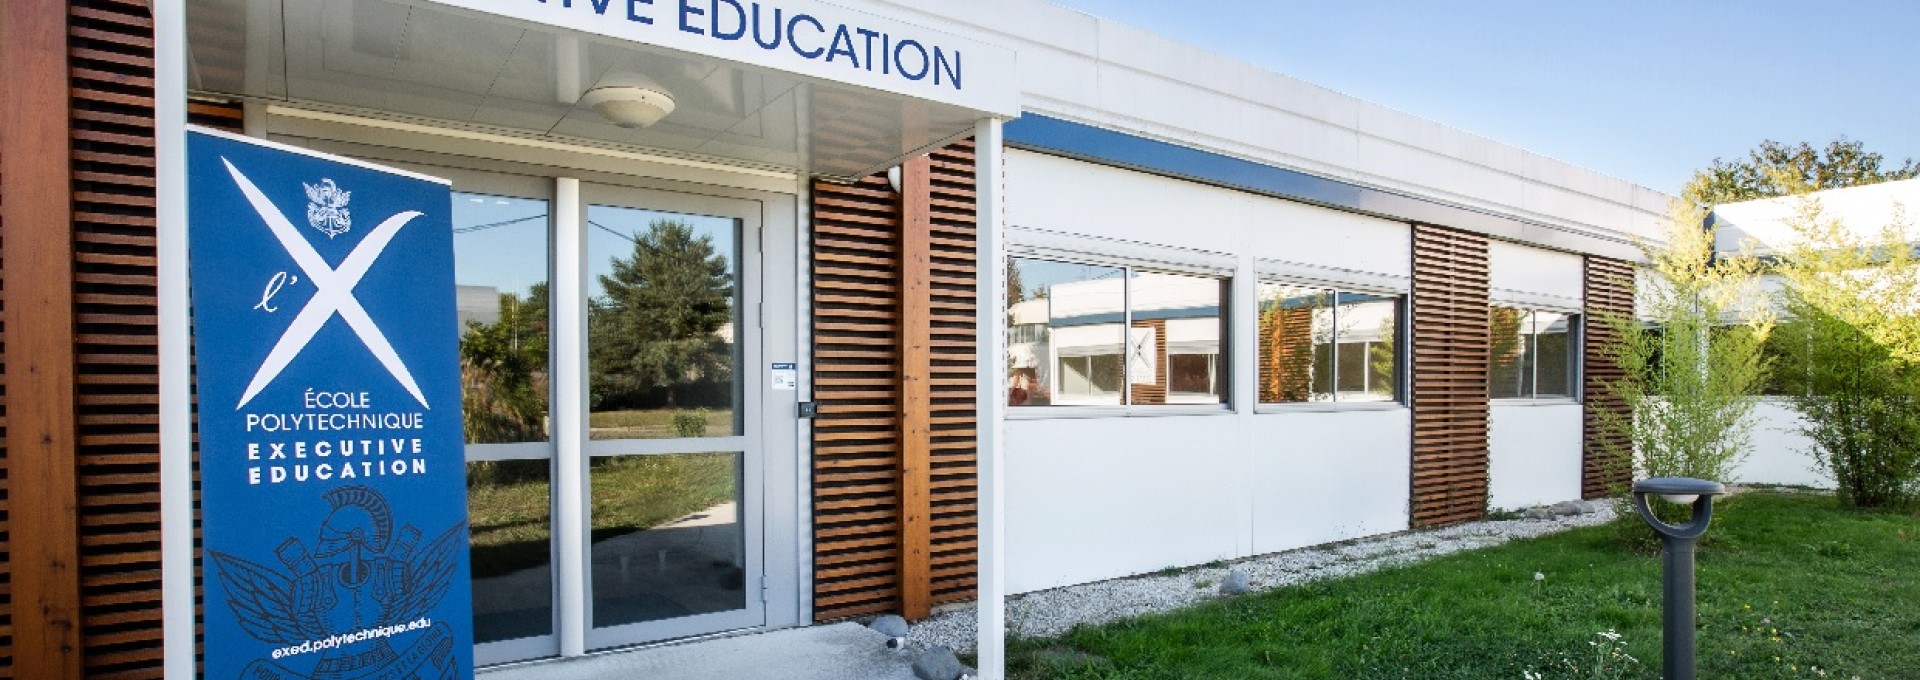 École Polytechnique’s Executive Education launches five new programs 